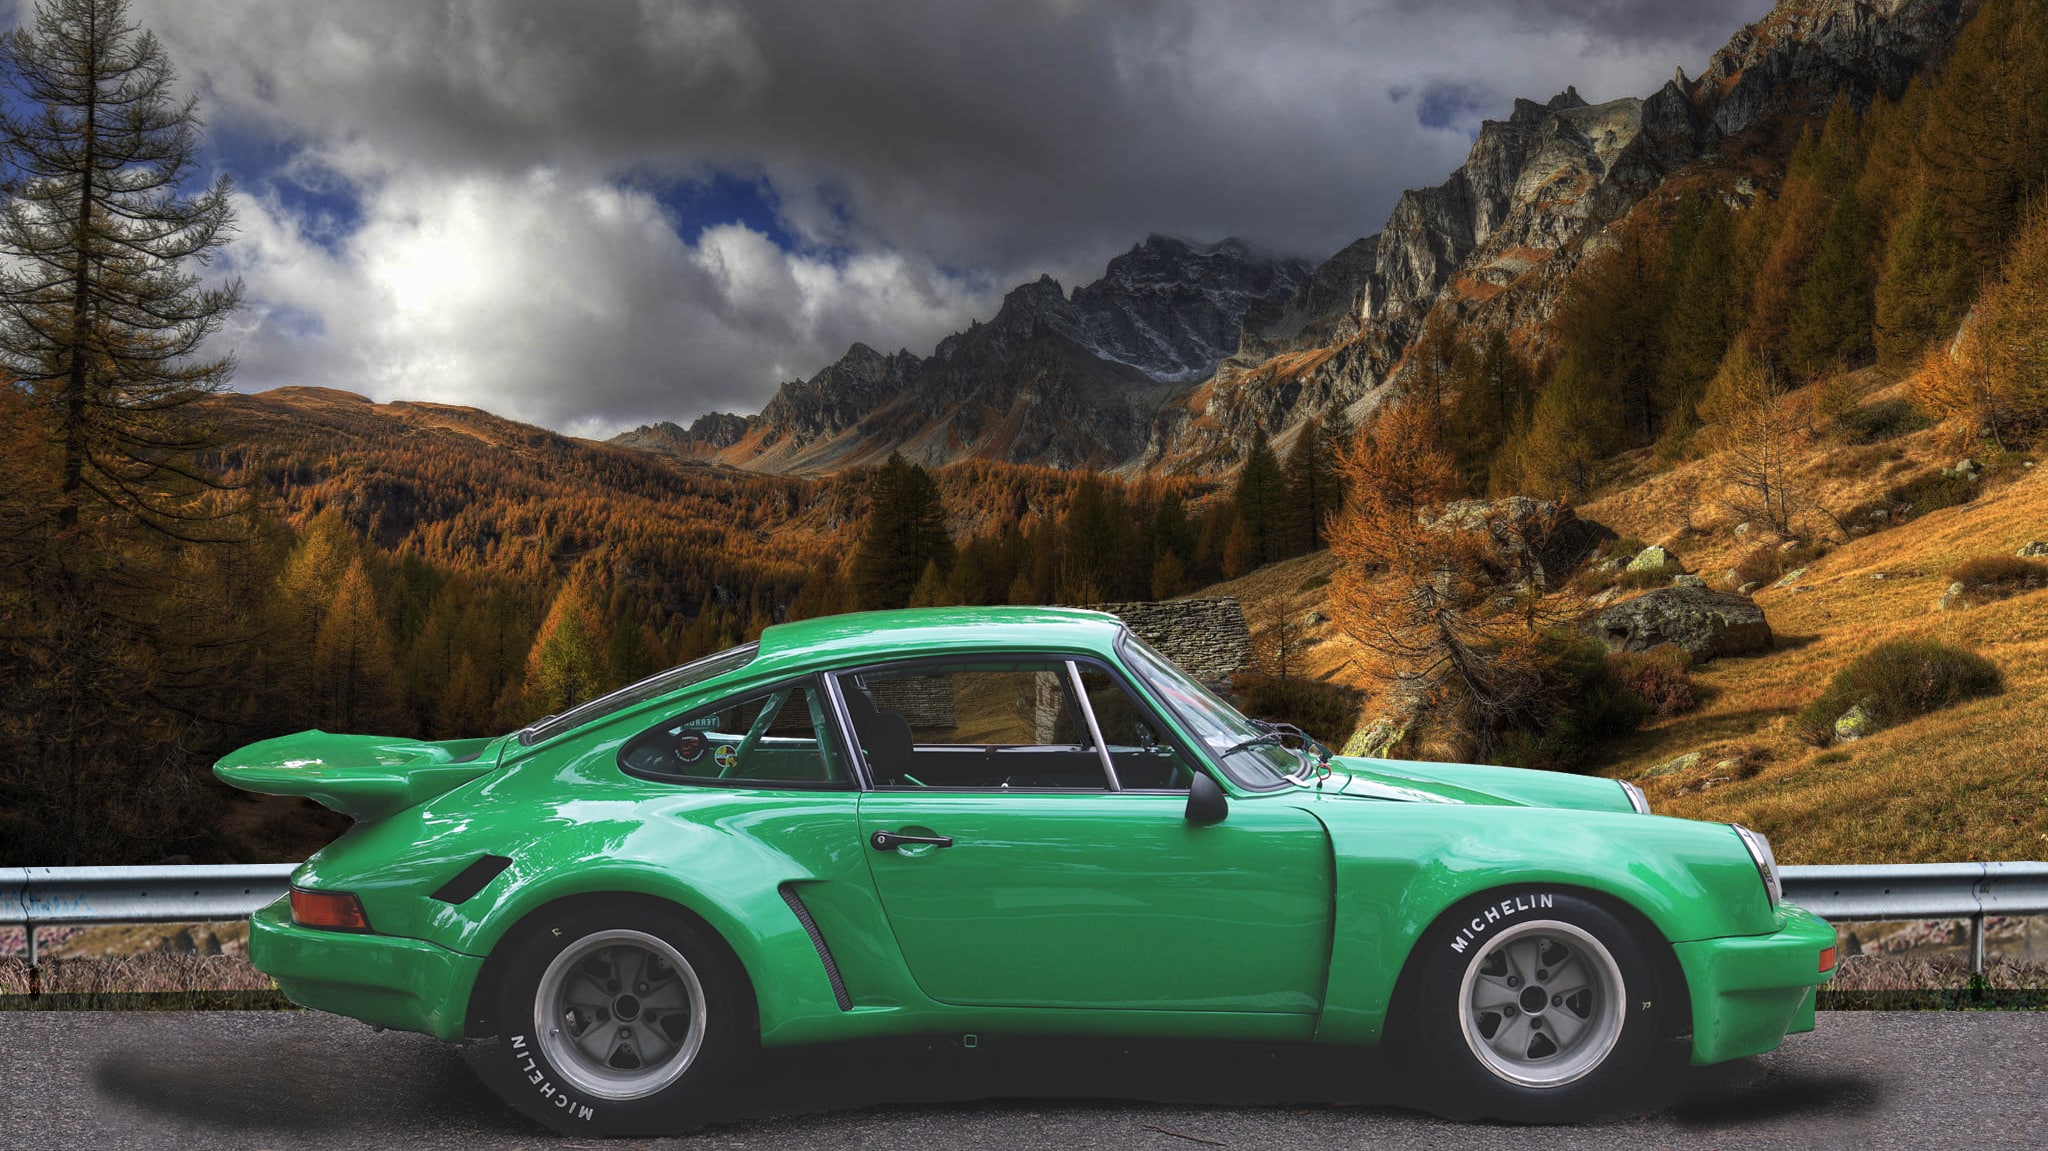 Porsche 911 Custom (green) - High Definition Wallpaper